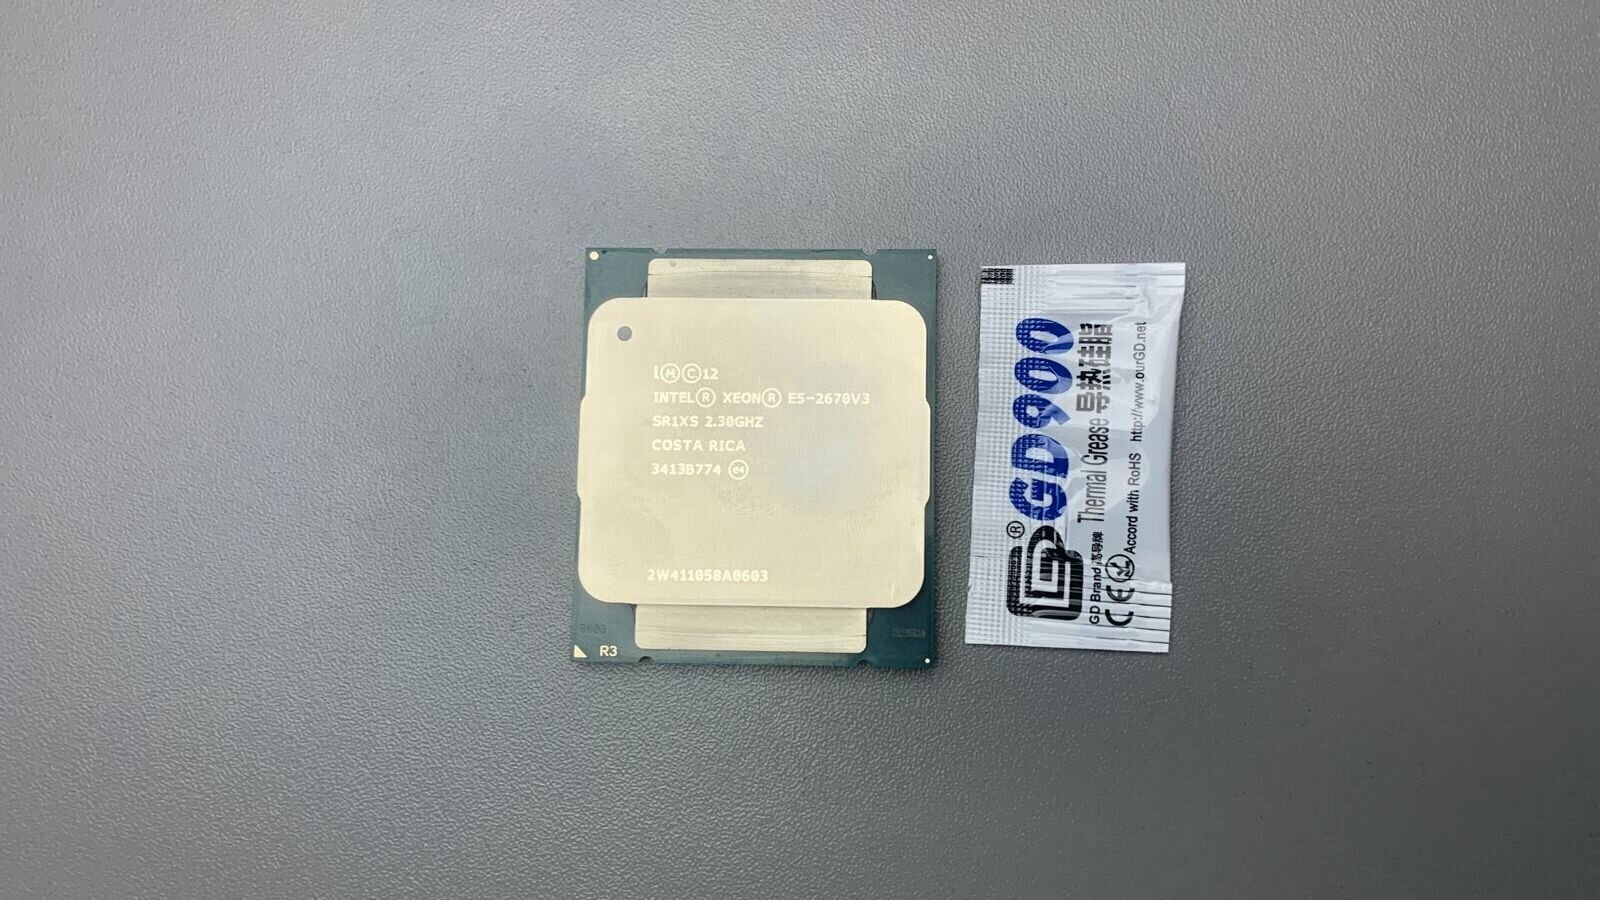 Процессор Intel Xeon E5-2670 v3